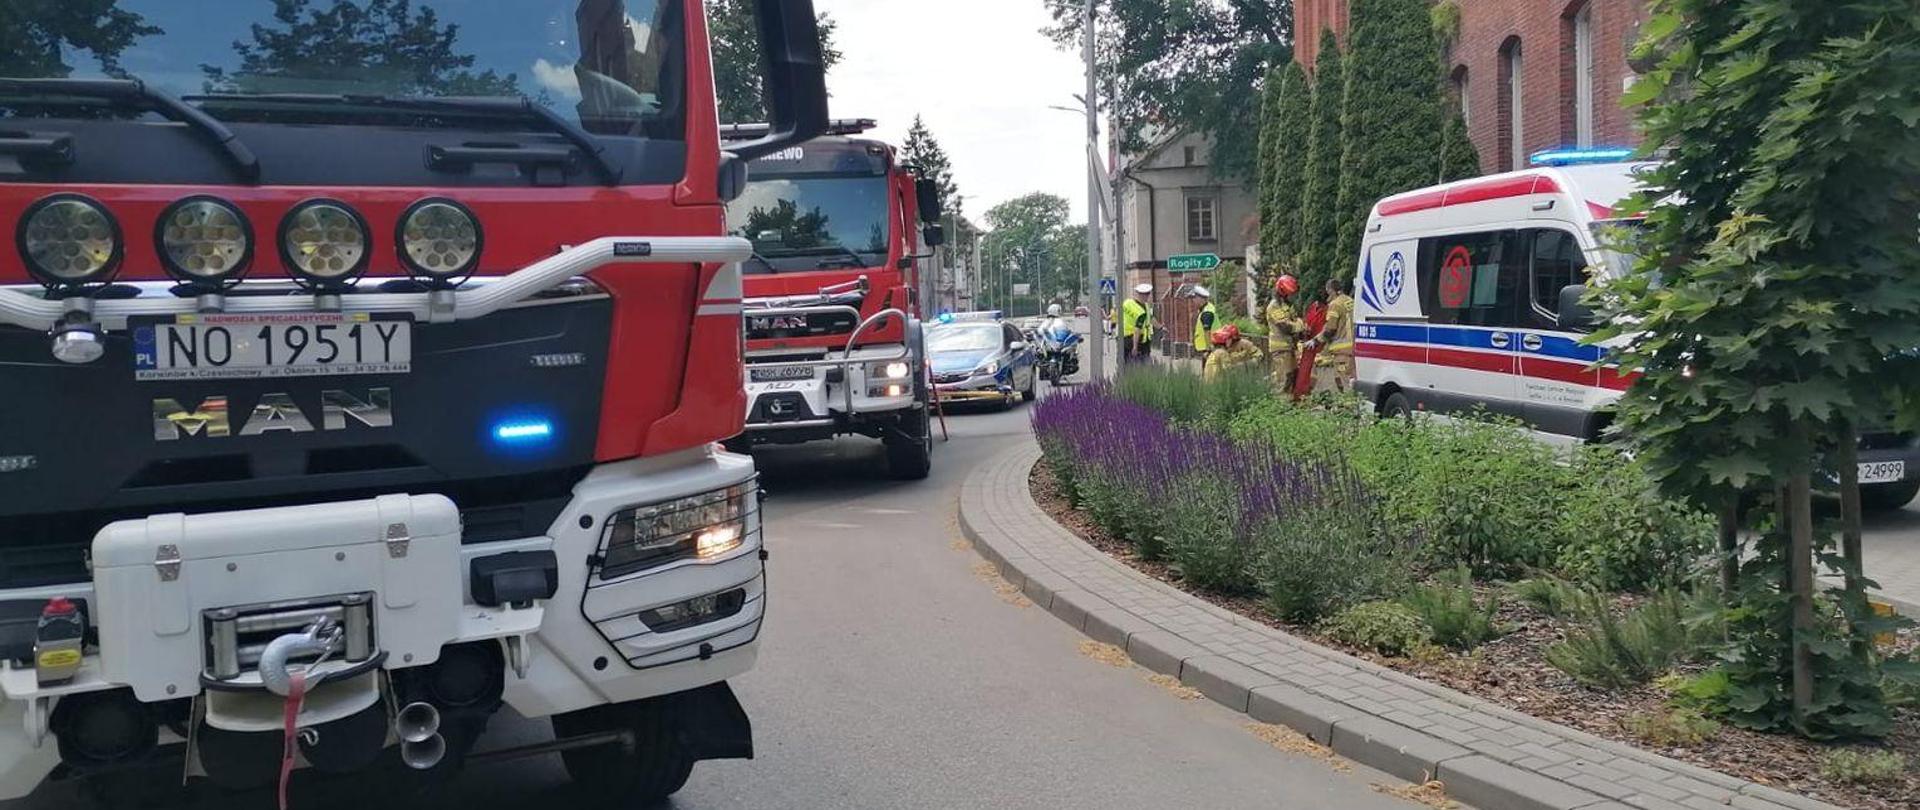 Na zdjęciu z lewej stoją dwa samochody strażackie. Z prawej przy budynku karetka, za nią strażacy i ratownicy.